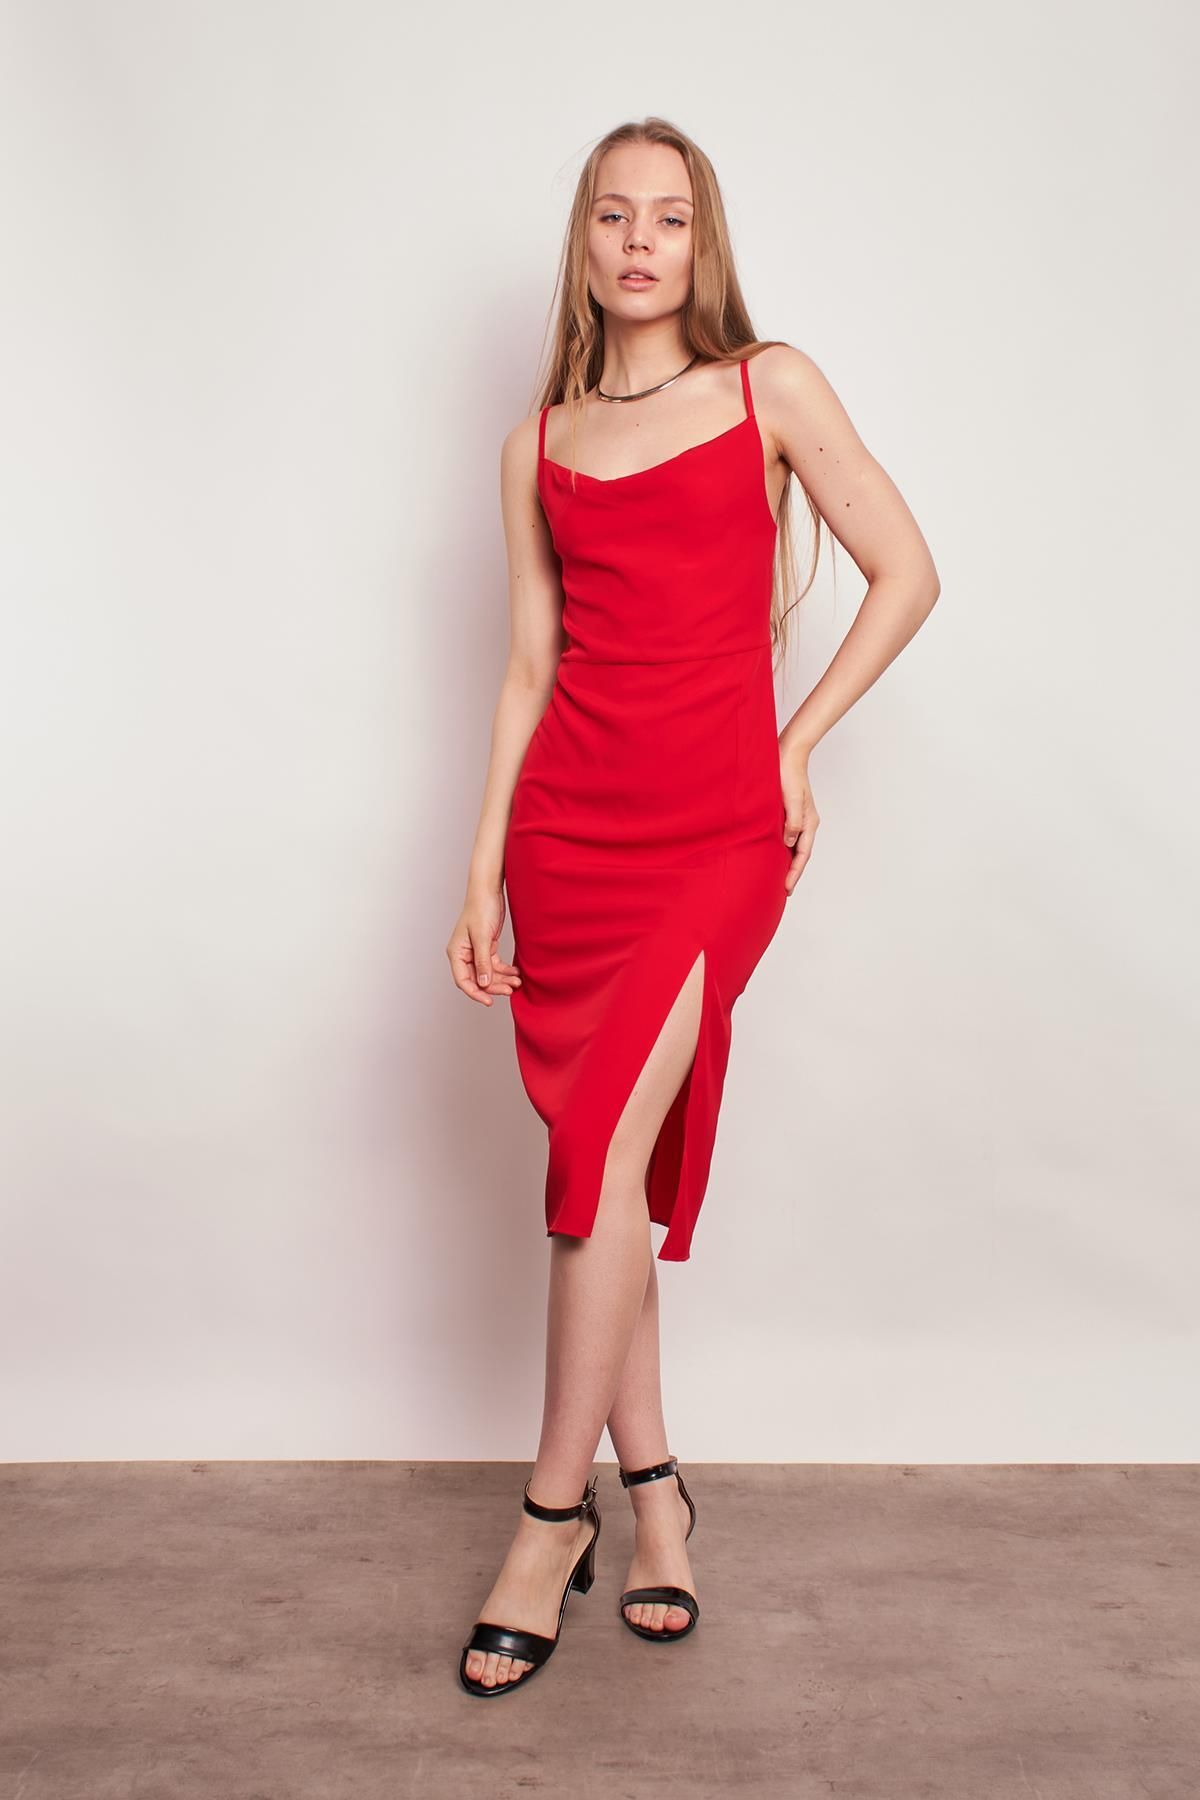 Jument Hafif Likralı Iç Göstermez Degaje Yaka Ip Askılı Önden Yırtmaçlı Diz Altı Elbise-kırmızı